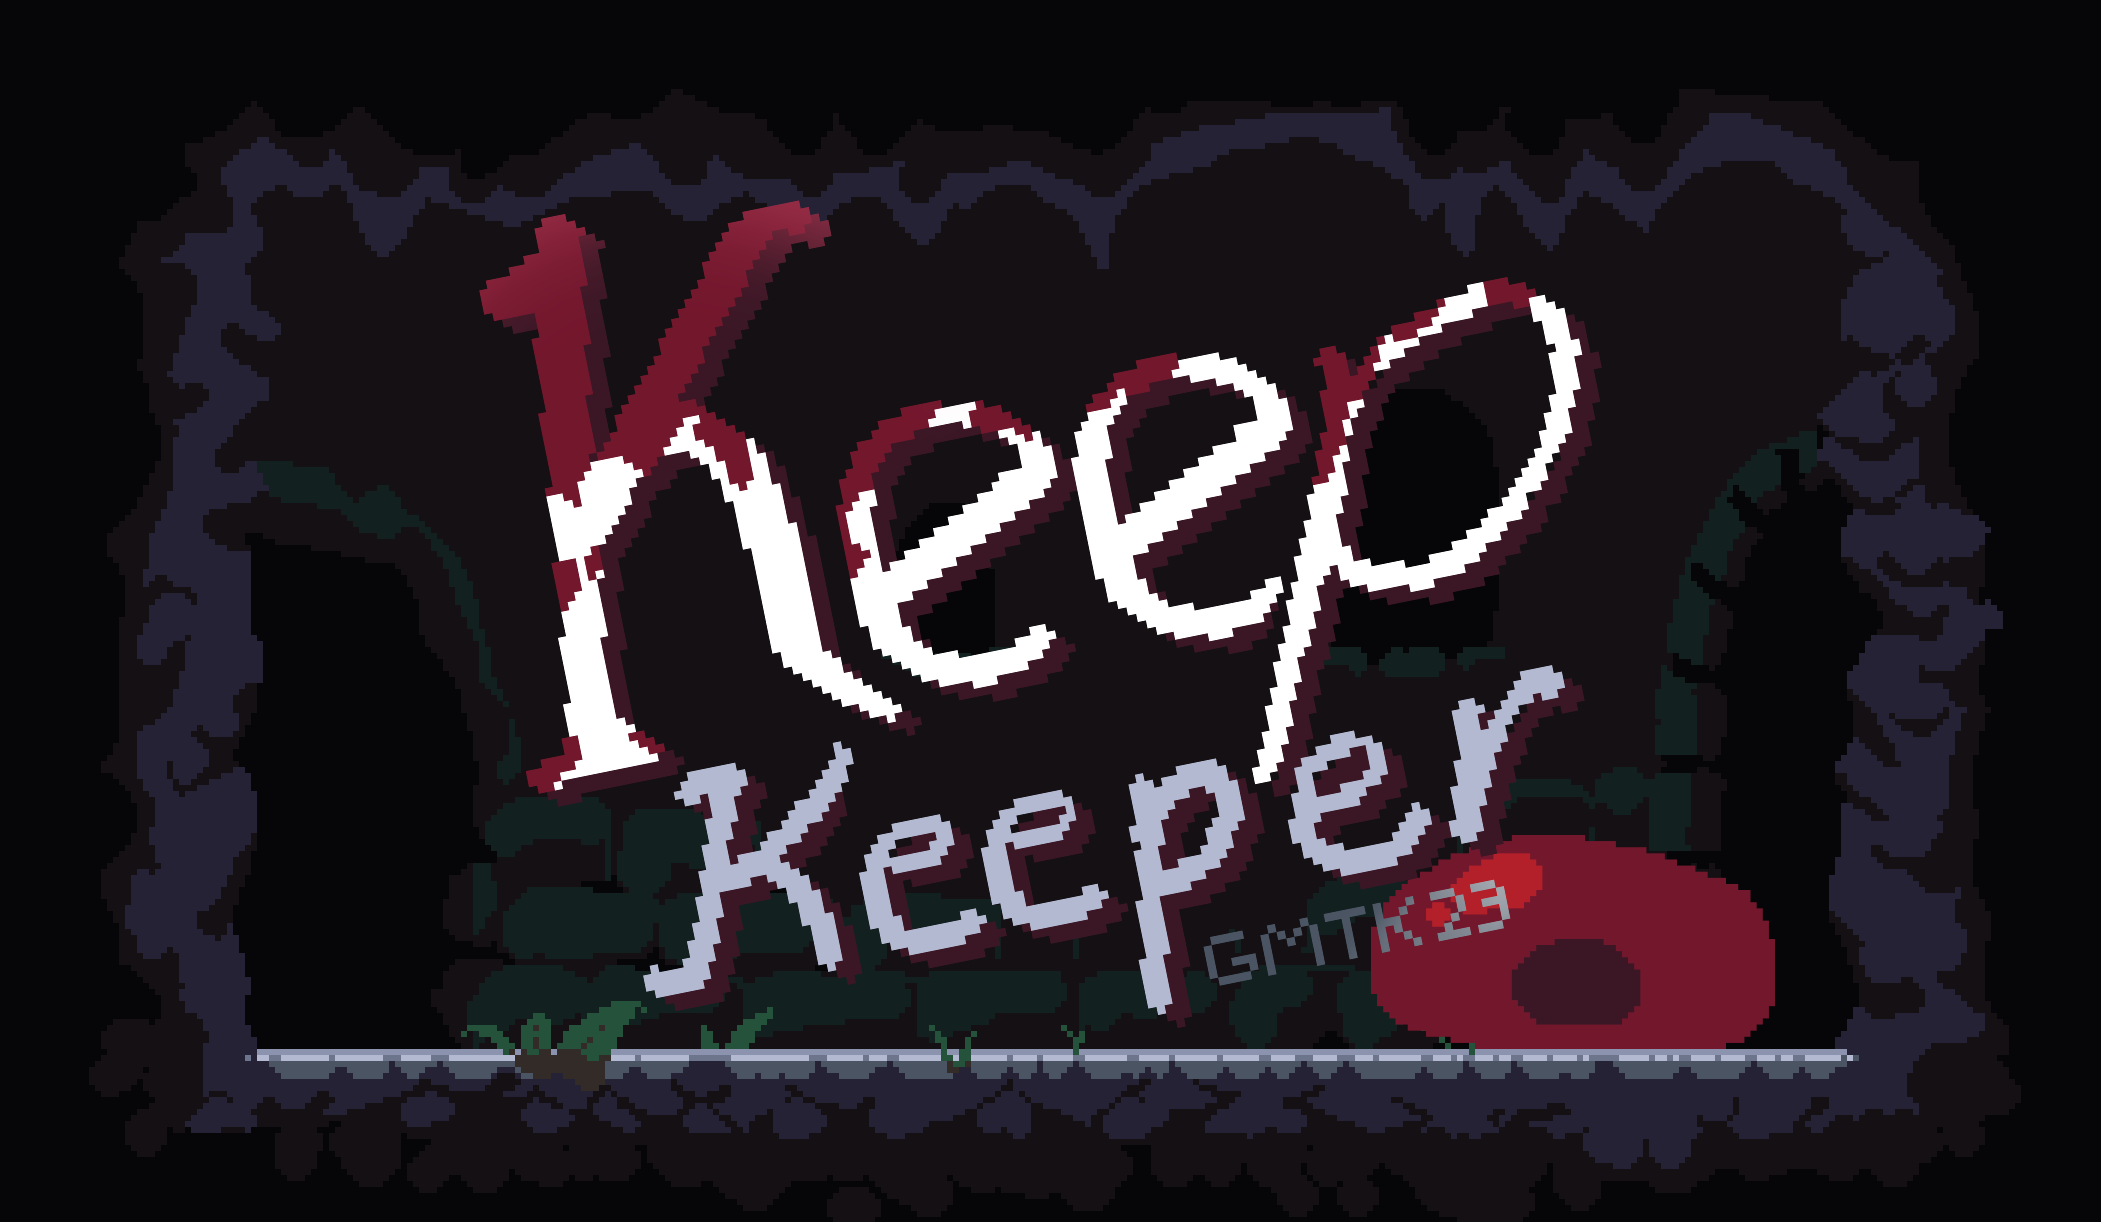 Keep keeper